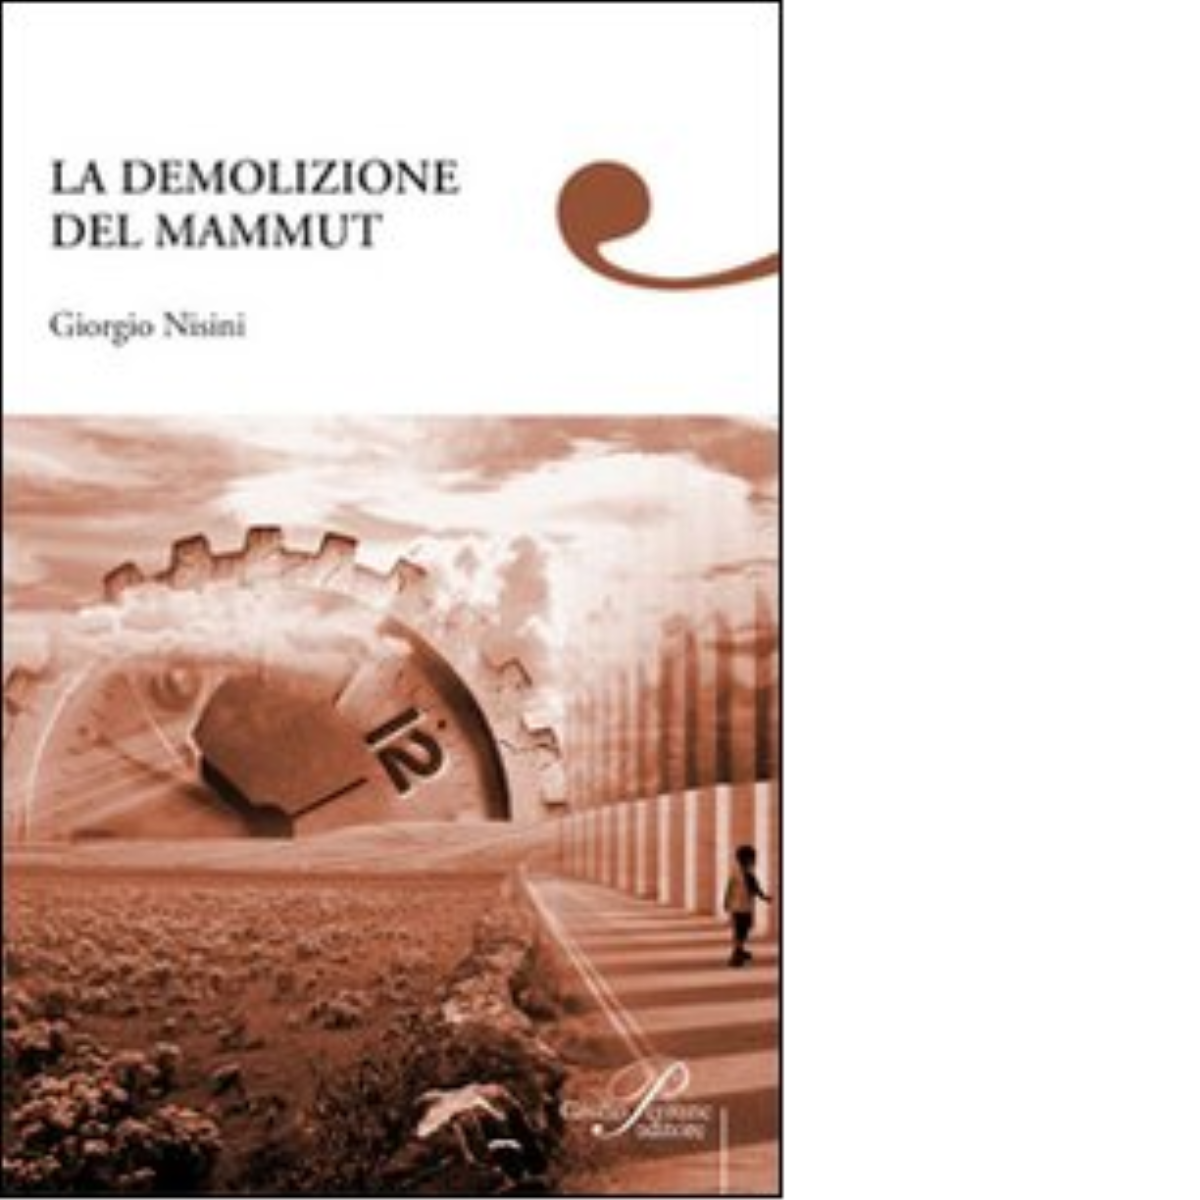 La demolizione del mammut - Giorgio Nisini - Perrone editore, 2008 libro usato